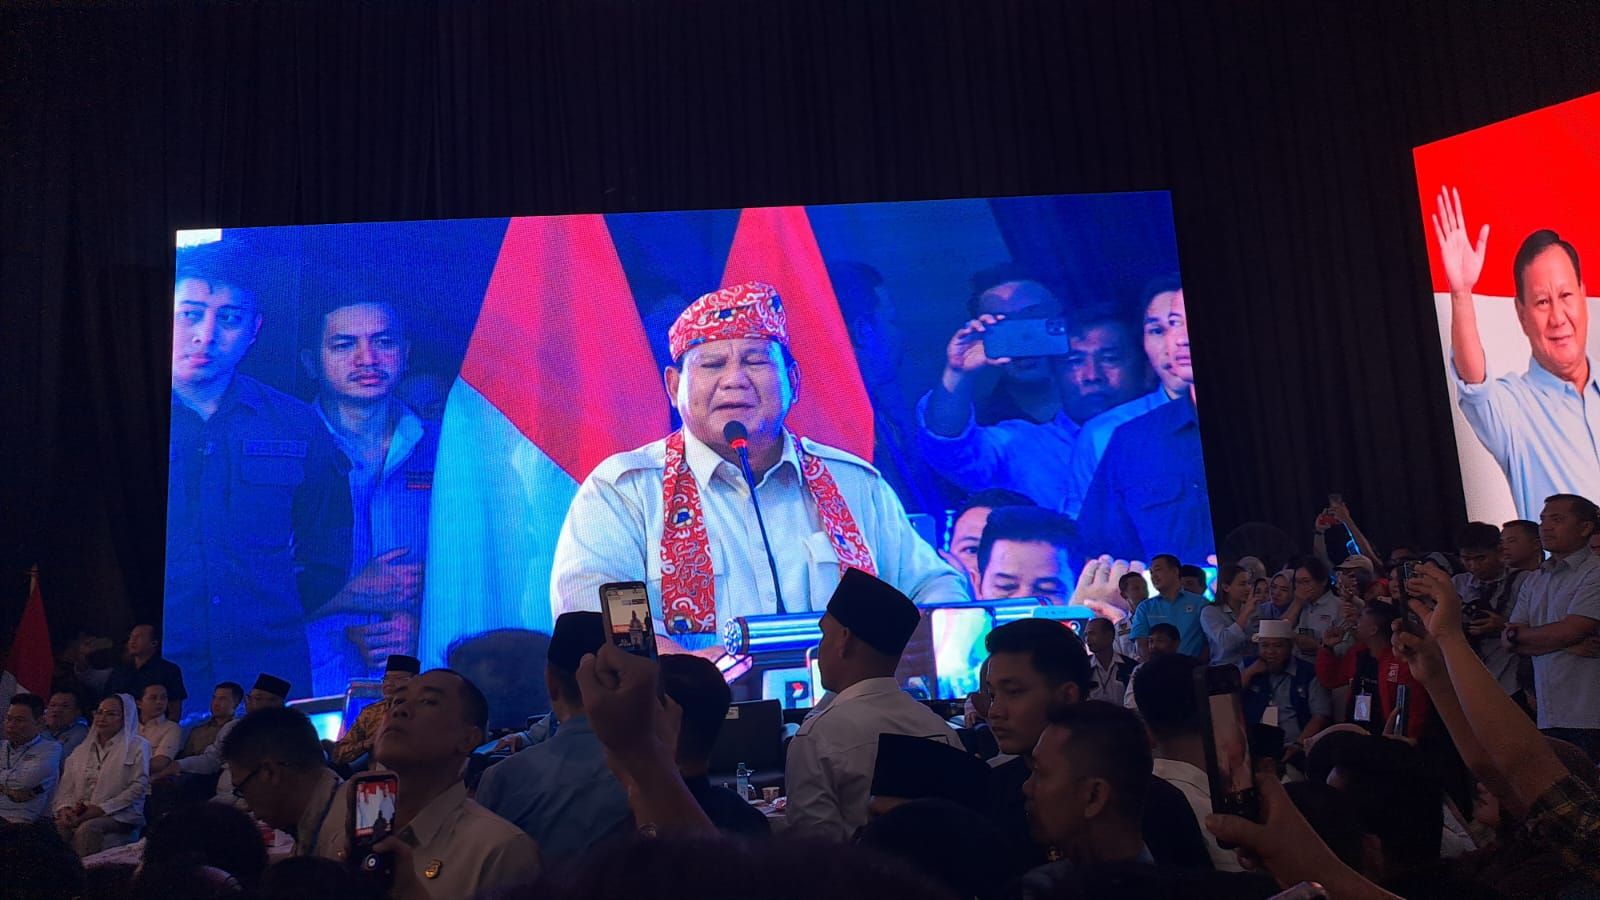 Prabowo: Kalian Mau Saya Bicara Sopan atau seperti Politisi Pintar Teori tapi Salah?